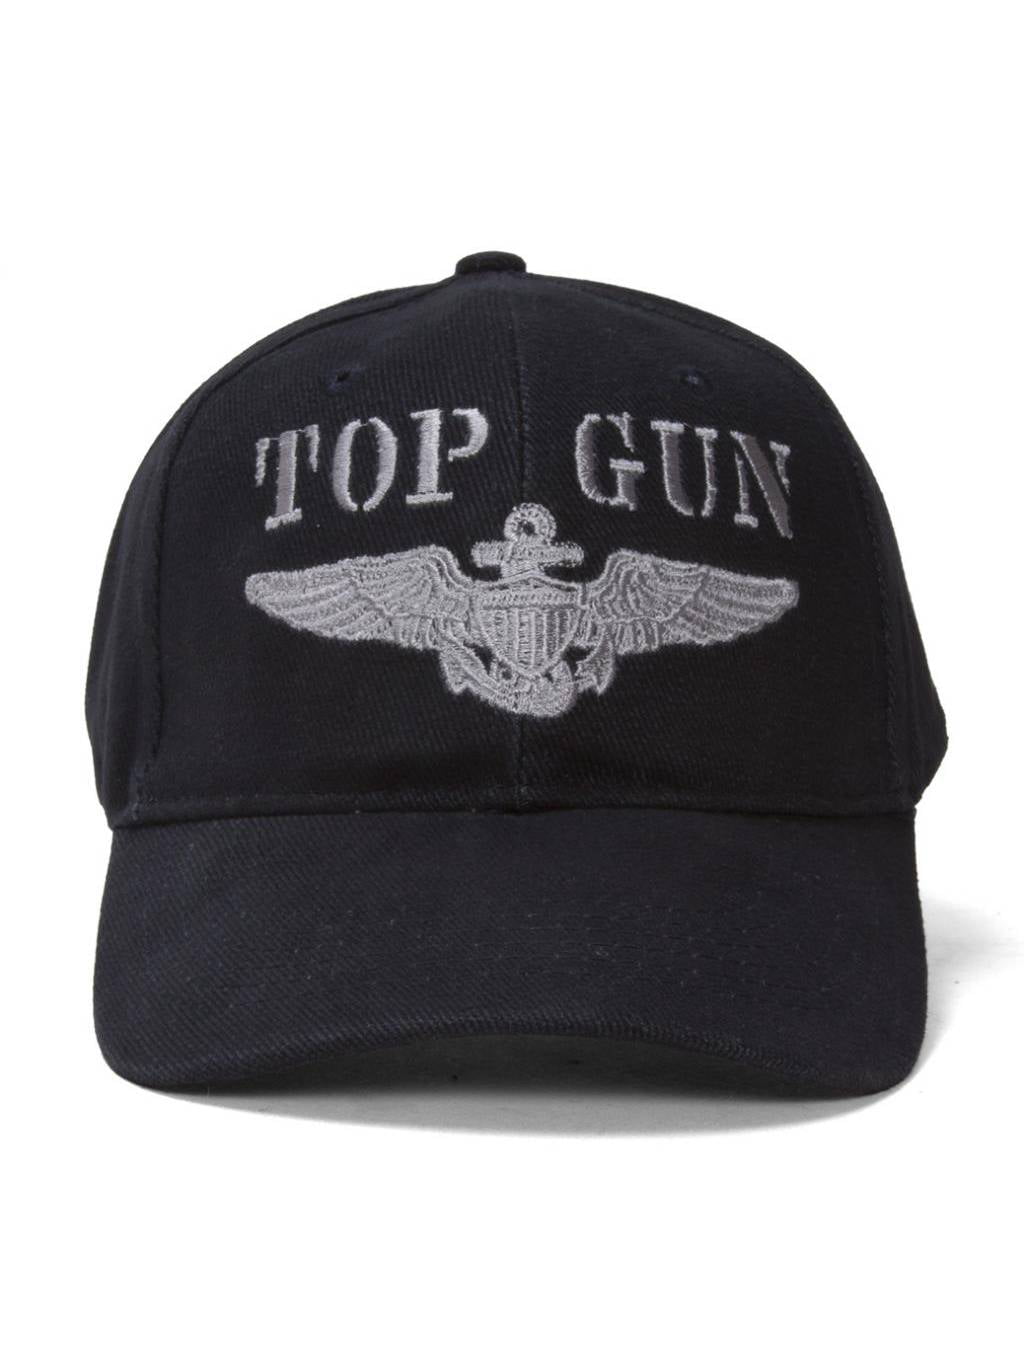 Top Gun Emblem Navy Adjustable Cap - Walmart.com